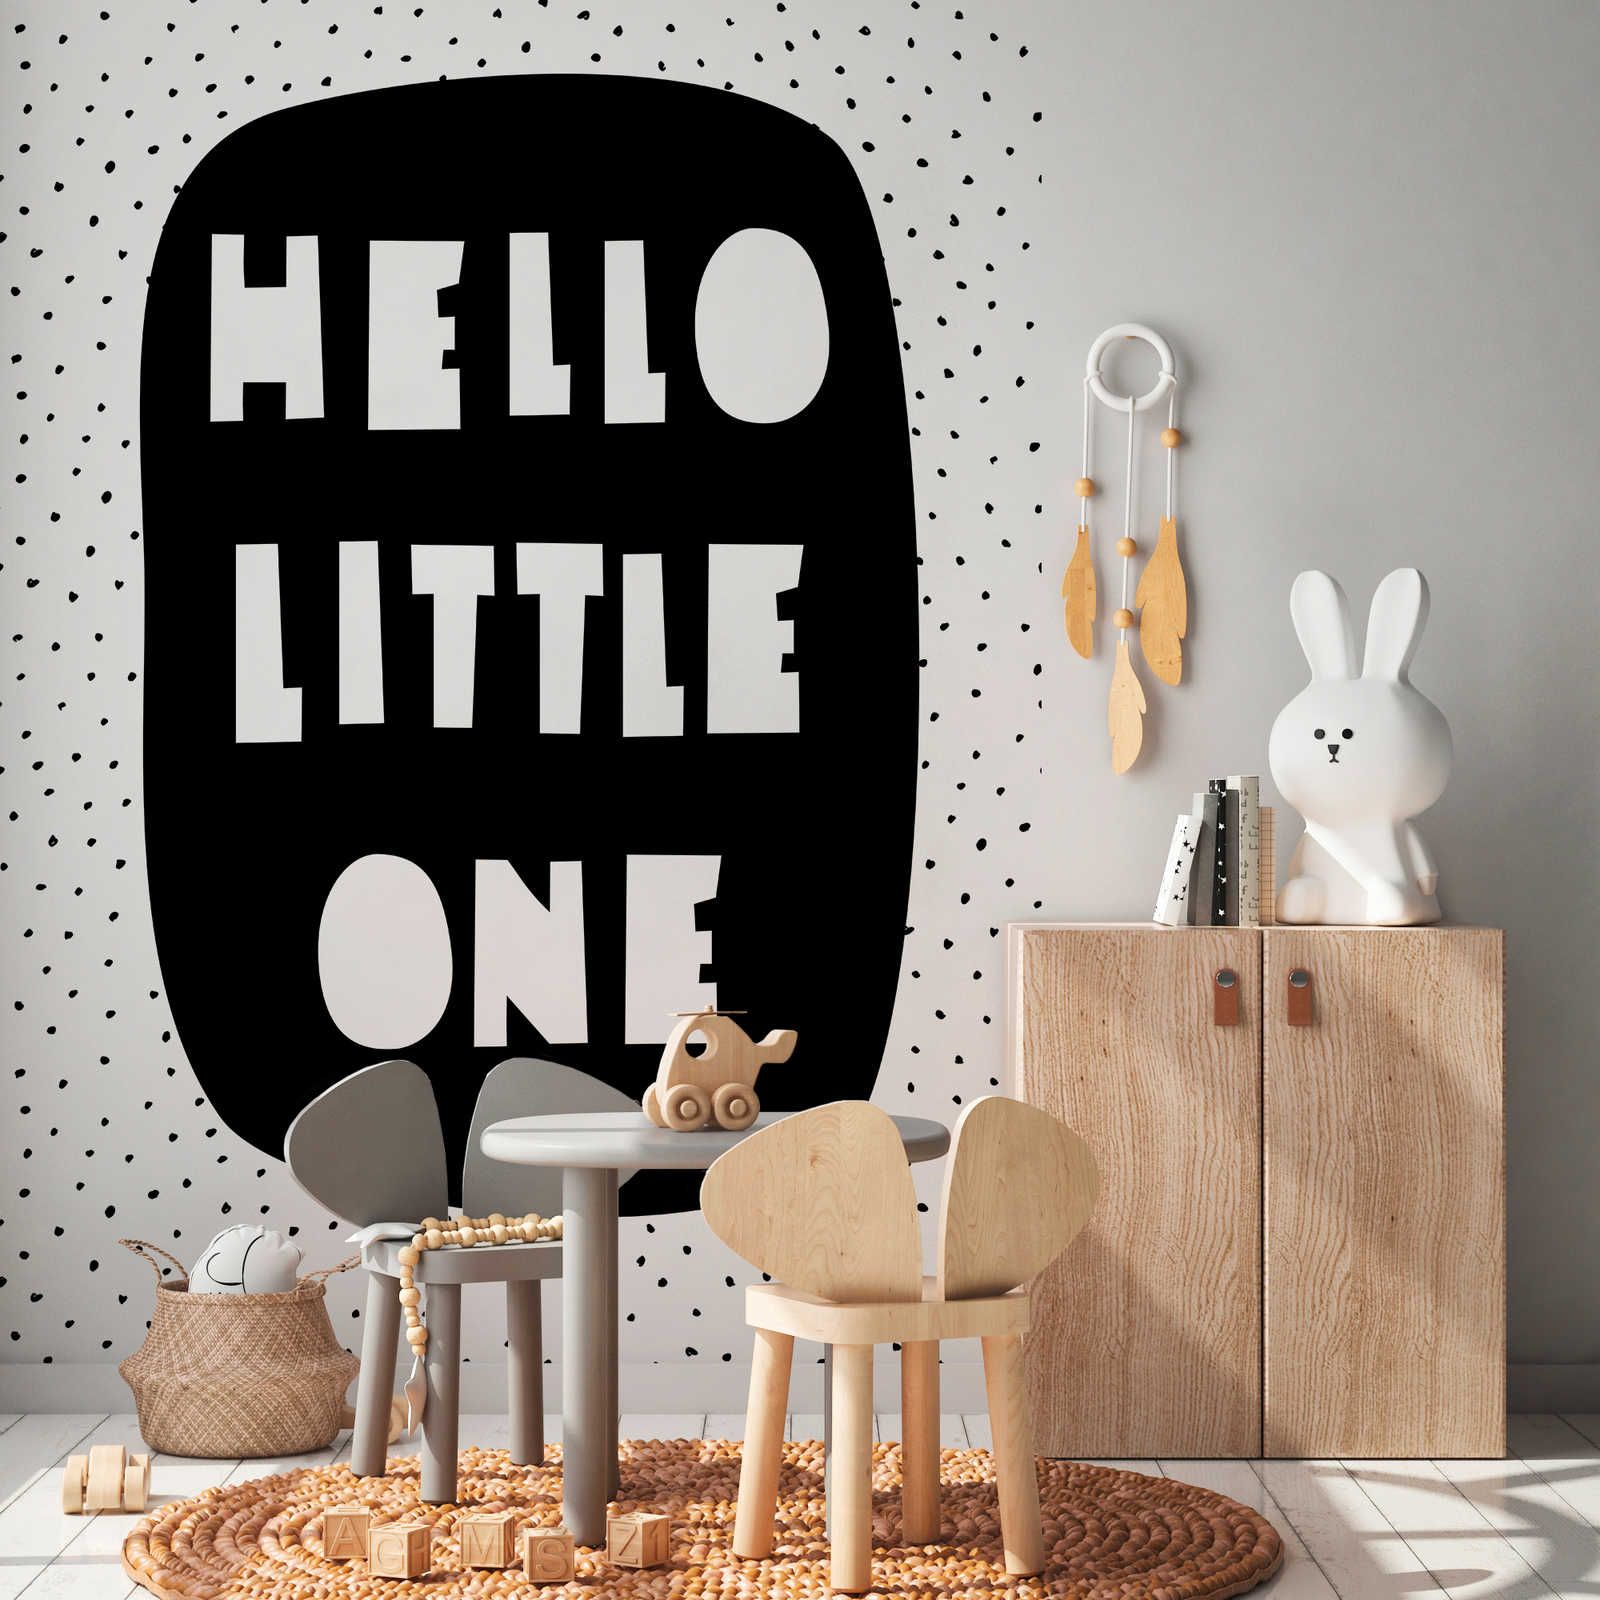 Fotomurali per la camera dei bambini con la scritta "Hello Little One" - Materiali non tessuto liscio e leggermente lucido
